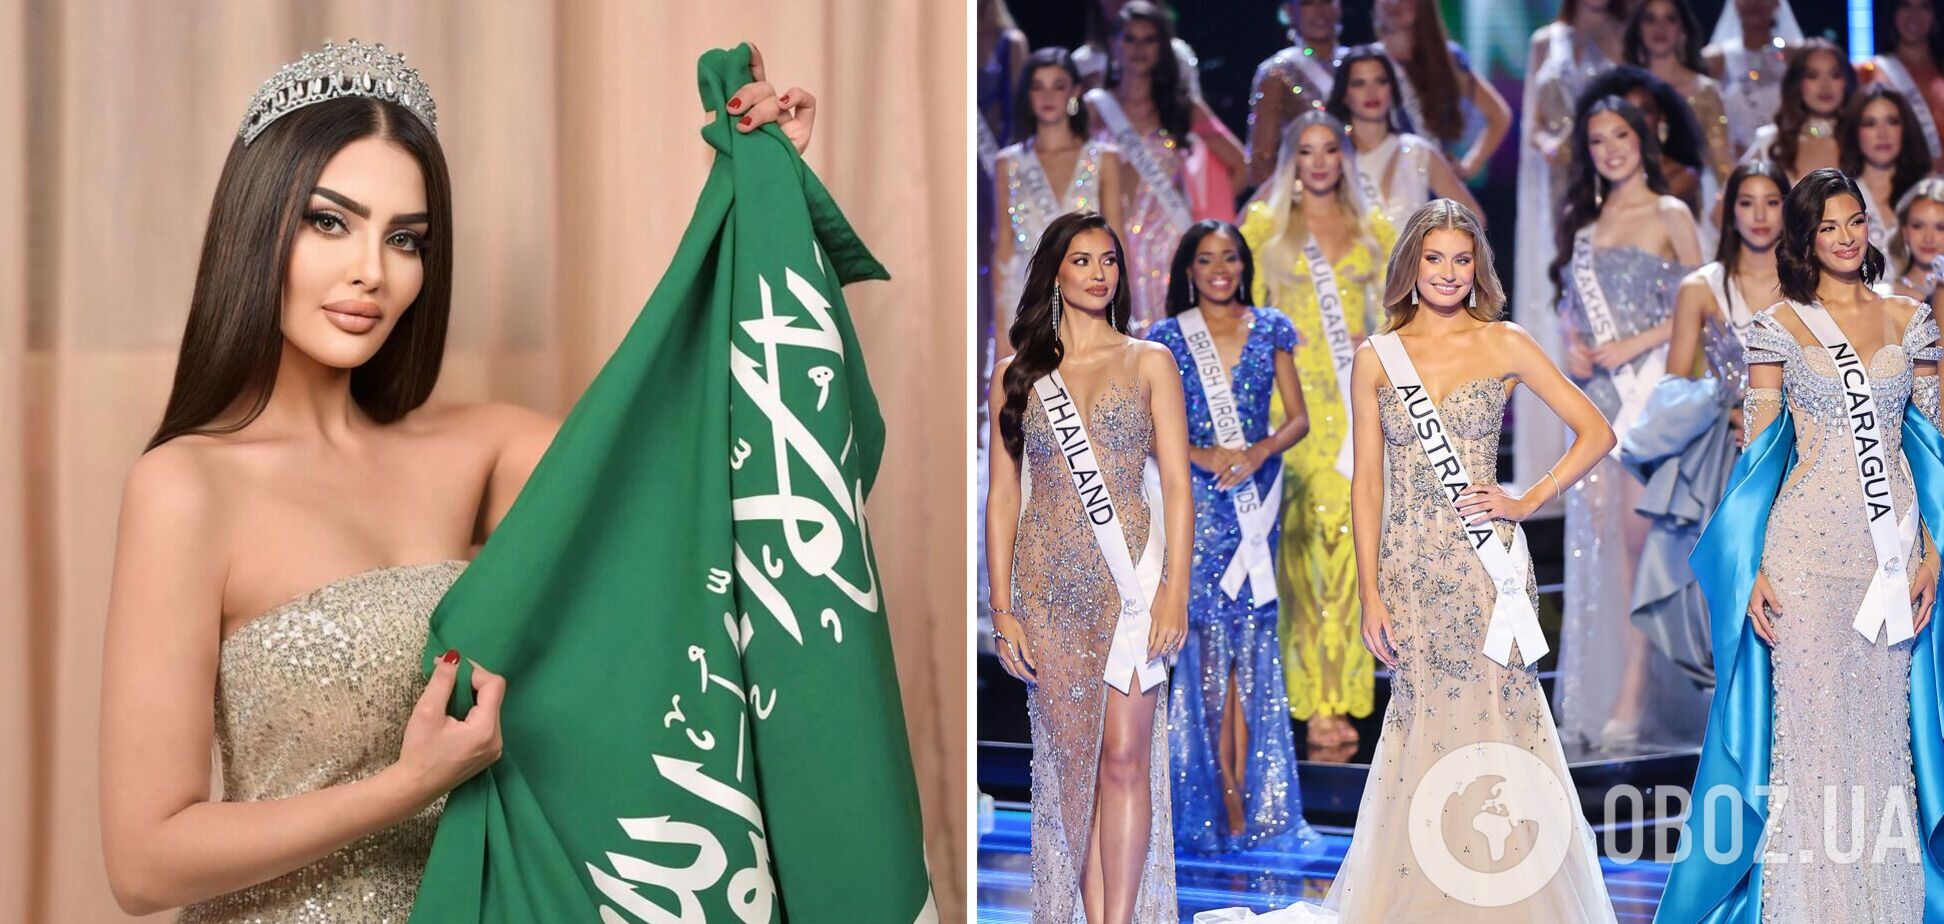 Організатори 'Міс Всесвіт' спростували участь Саудівської Аравії в конкурсі і звинуватили 27-річну модель у брехні